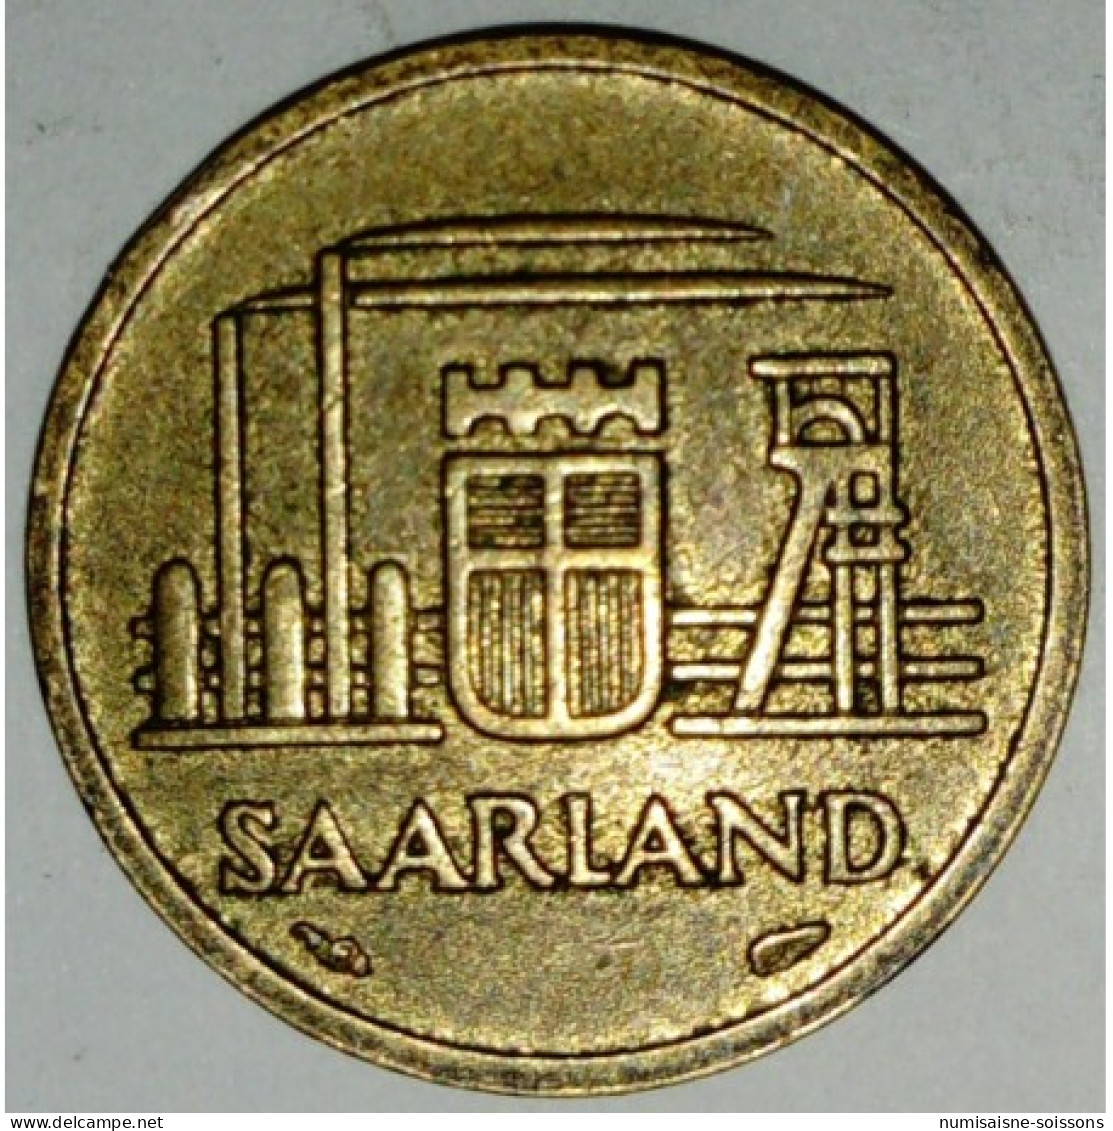 ALLEMAGNE - SARRE - 10 FRANKEN 1954 - TTB - 10 Franchi